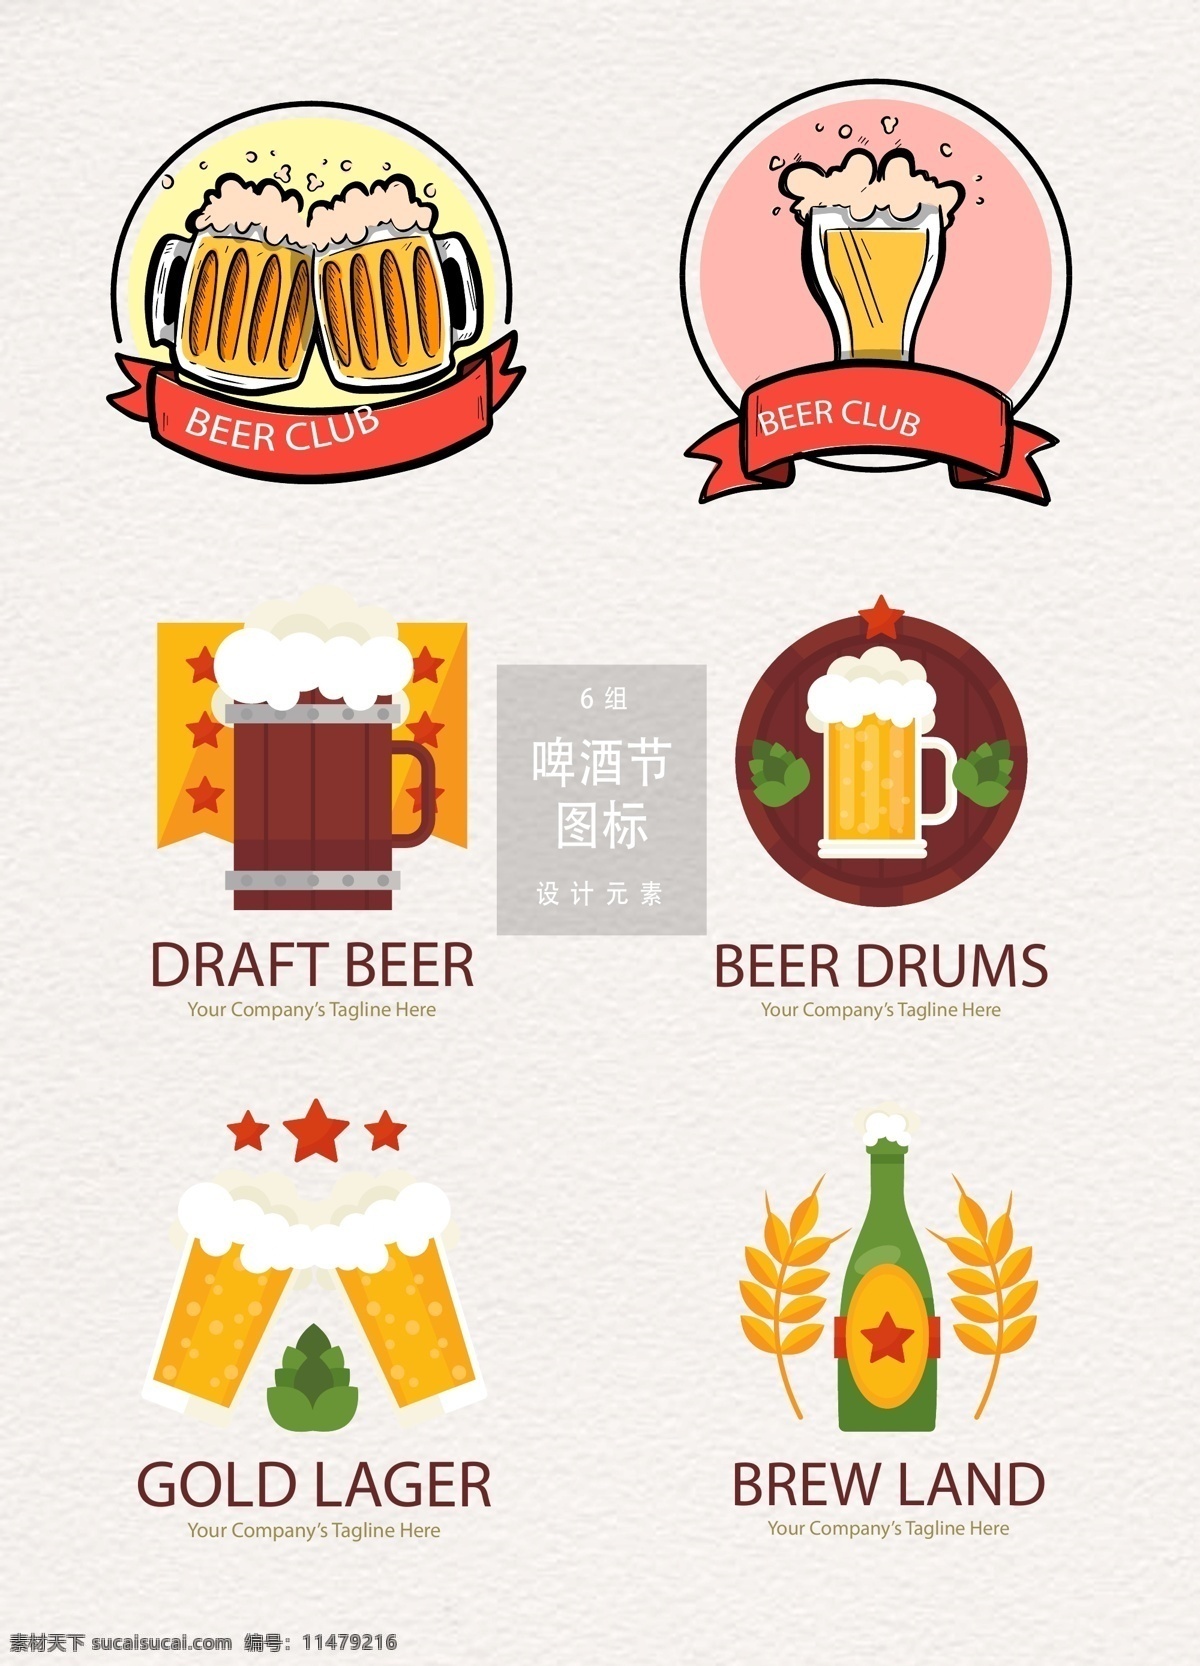 啤酒节 元素 图标 设计素材 啤酒 矢量素材 饮料 ai素材 德国啤酒节 手绘啤酒 啤酒节图标 啤酒图标